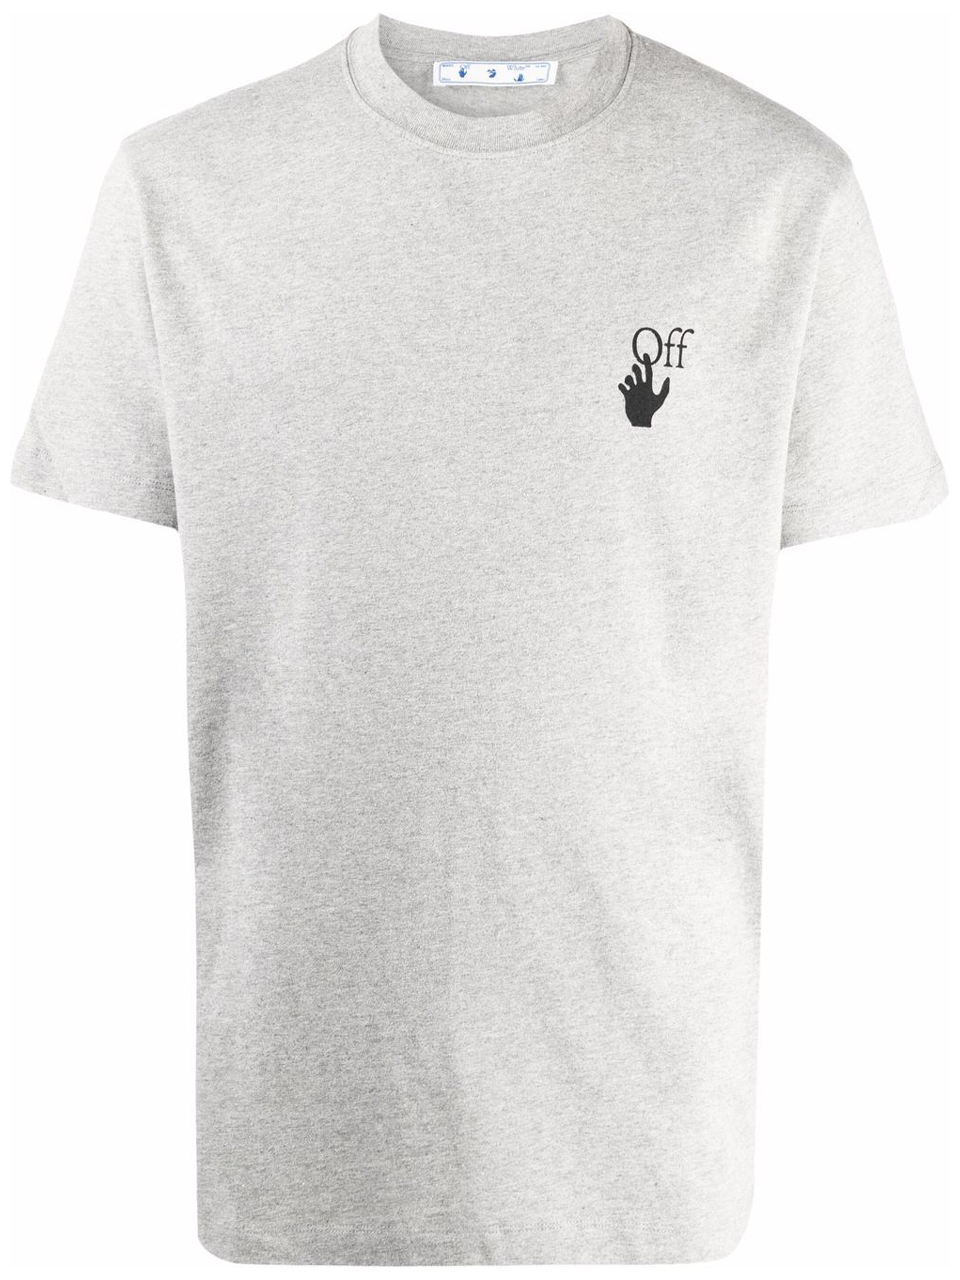 Imagem de: Camiseta Off-White Cinza com Estampa Setas